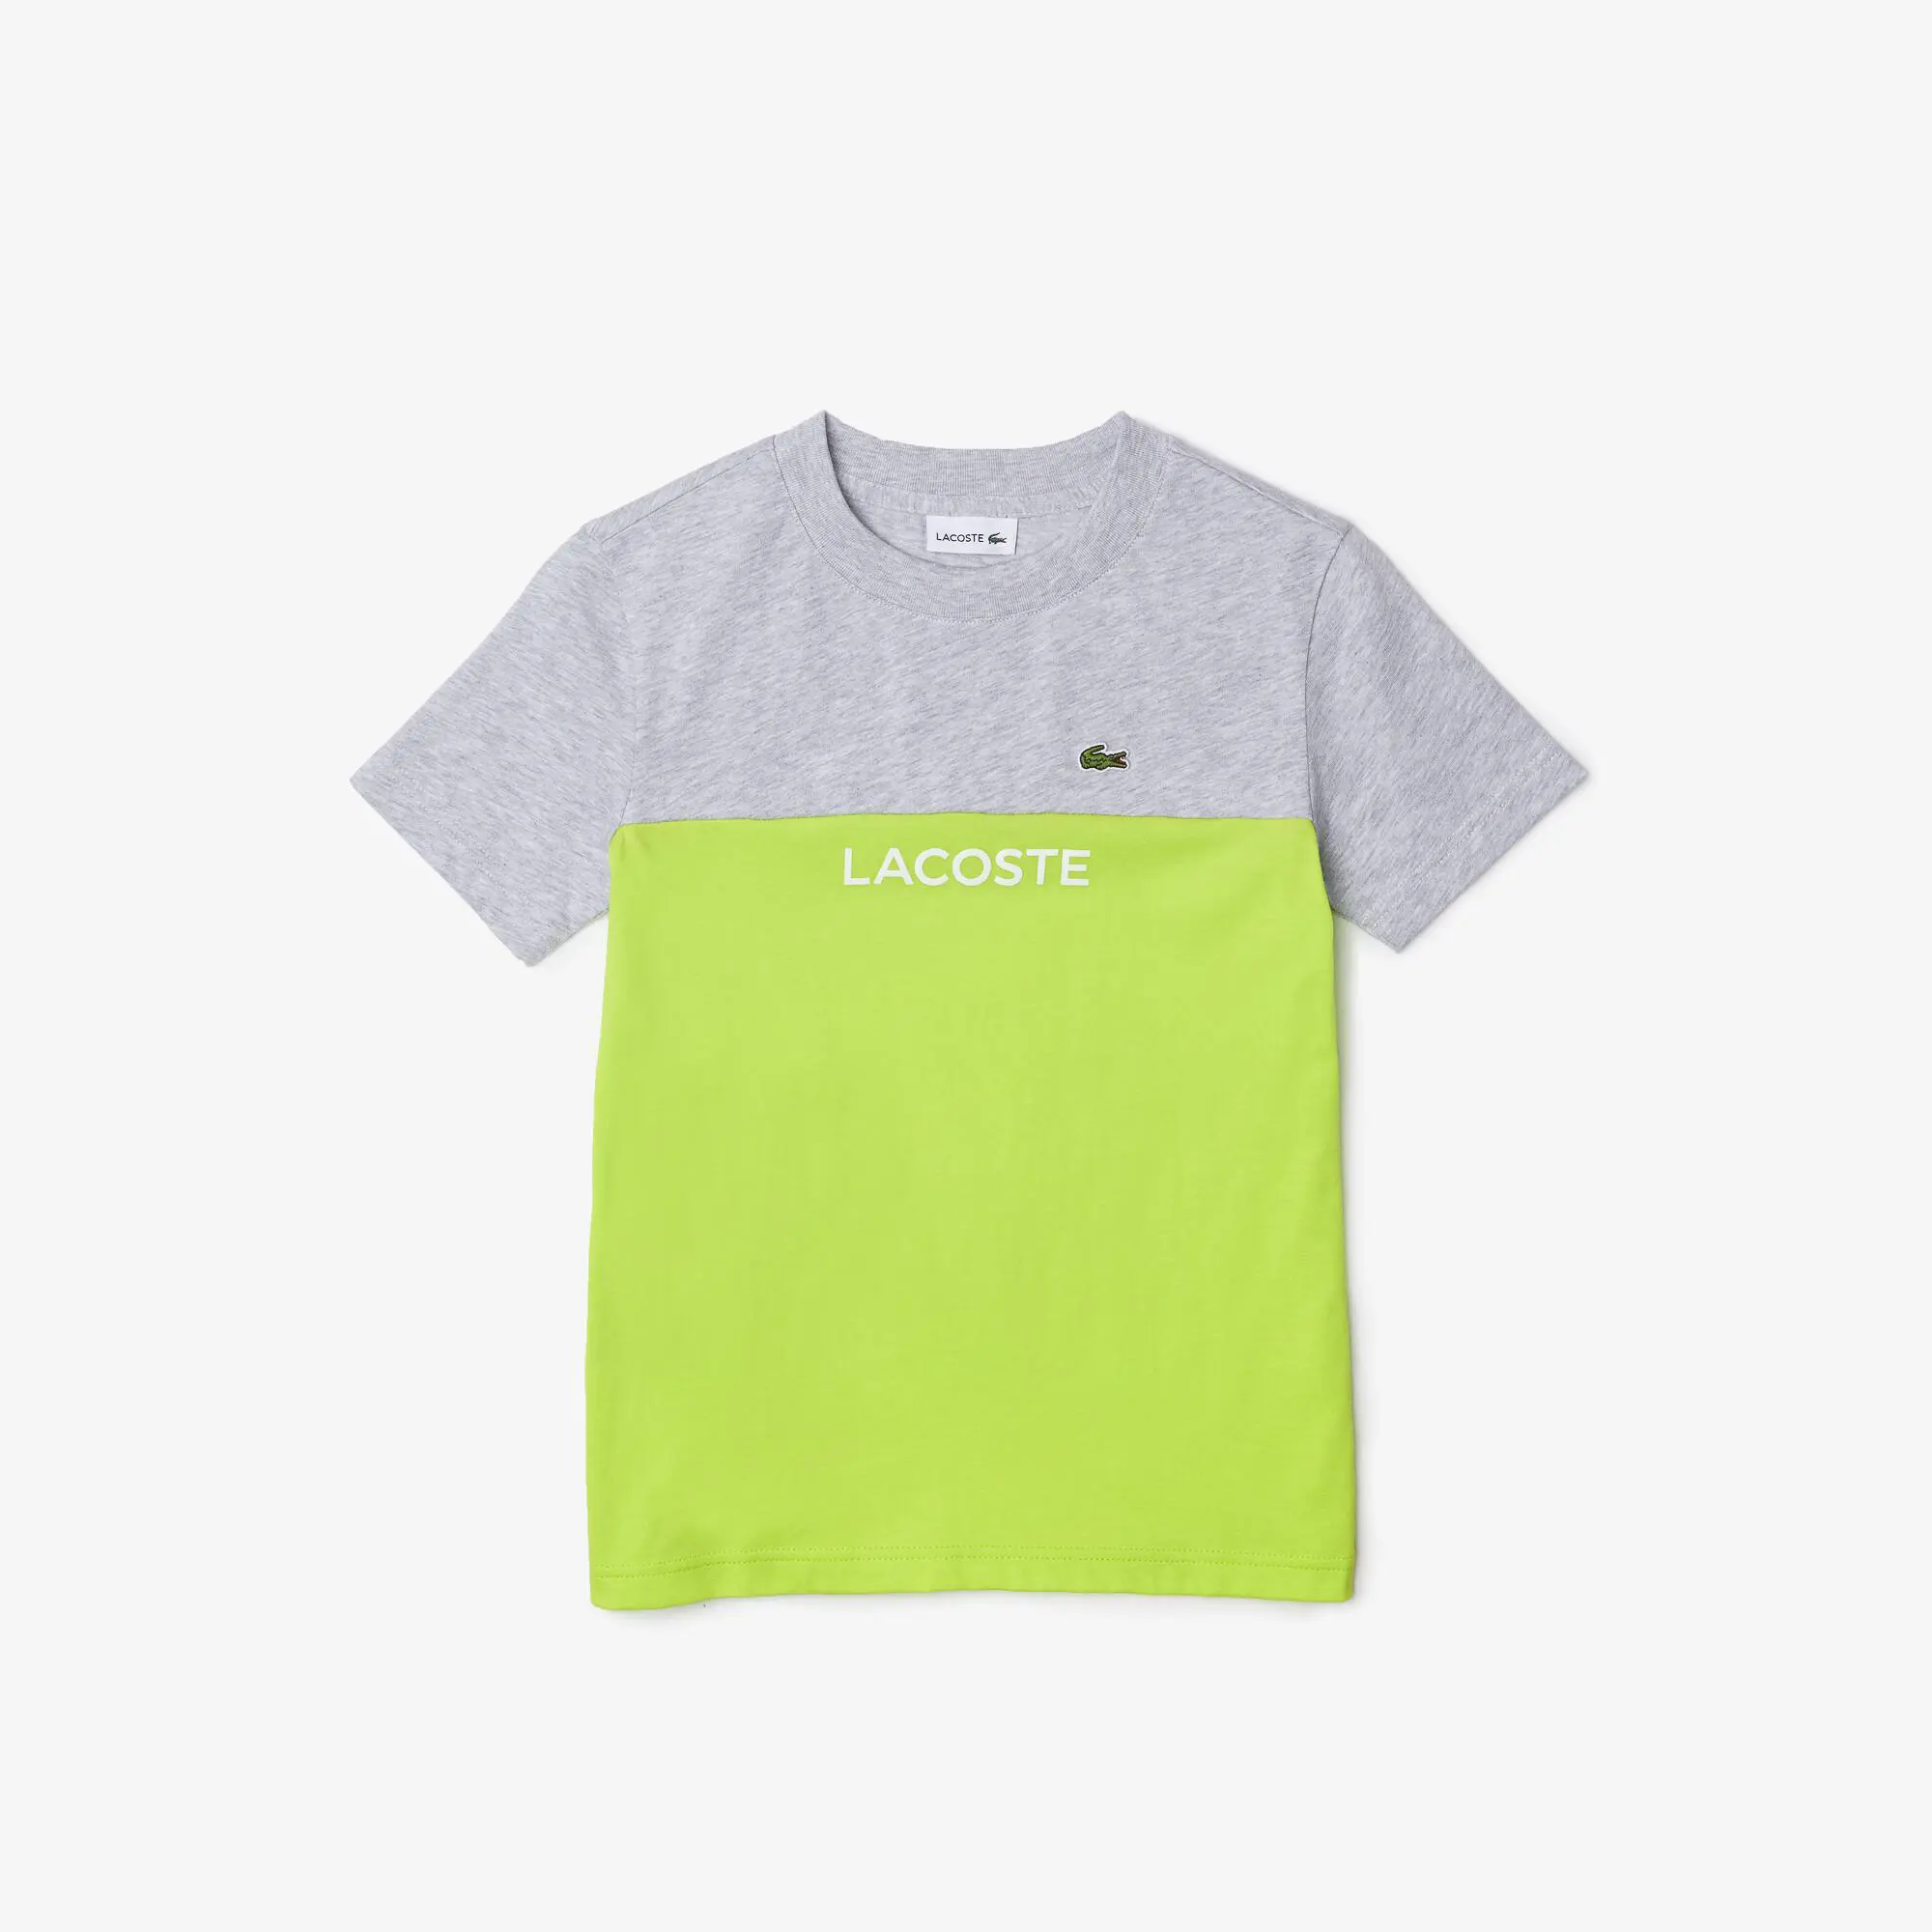 Lacoste Camiseta infantil Lacoste en punto de algodón ecológico color block. 2